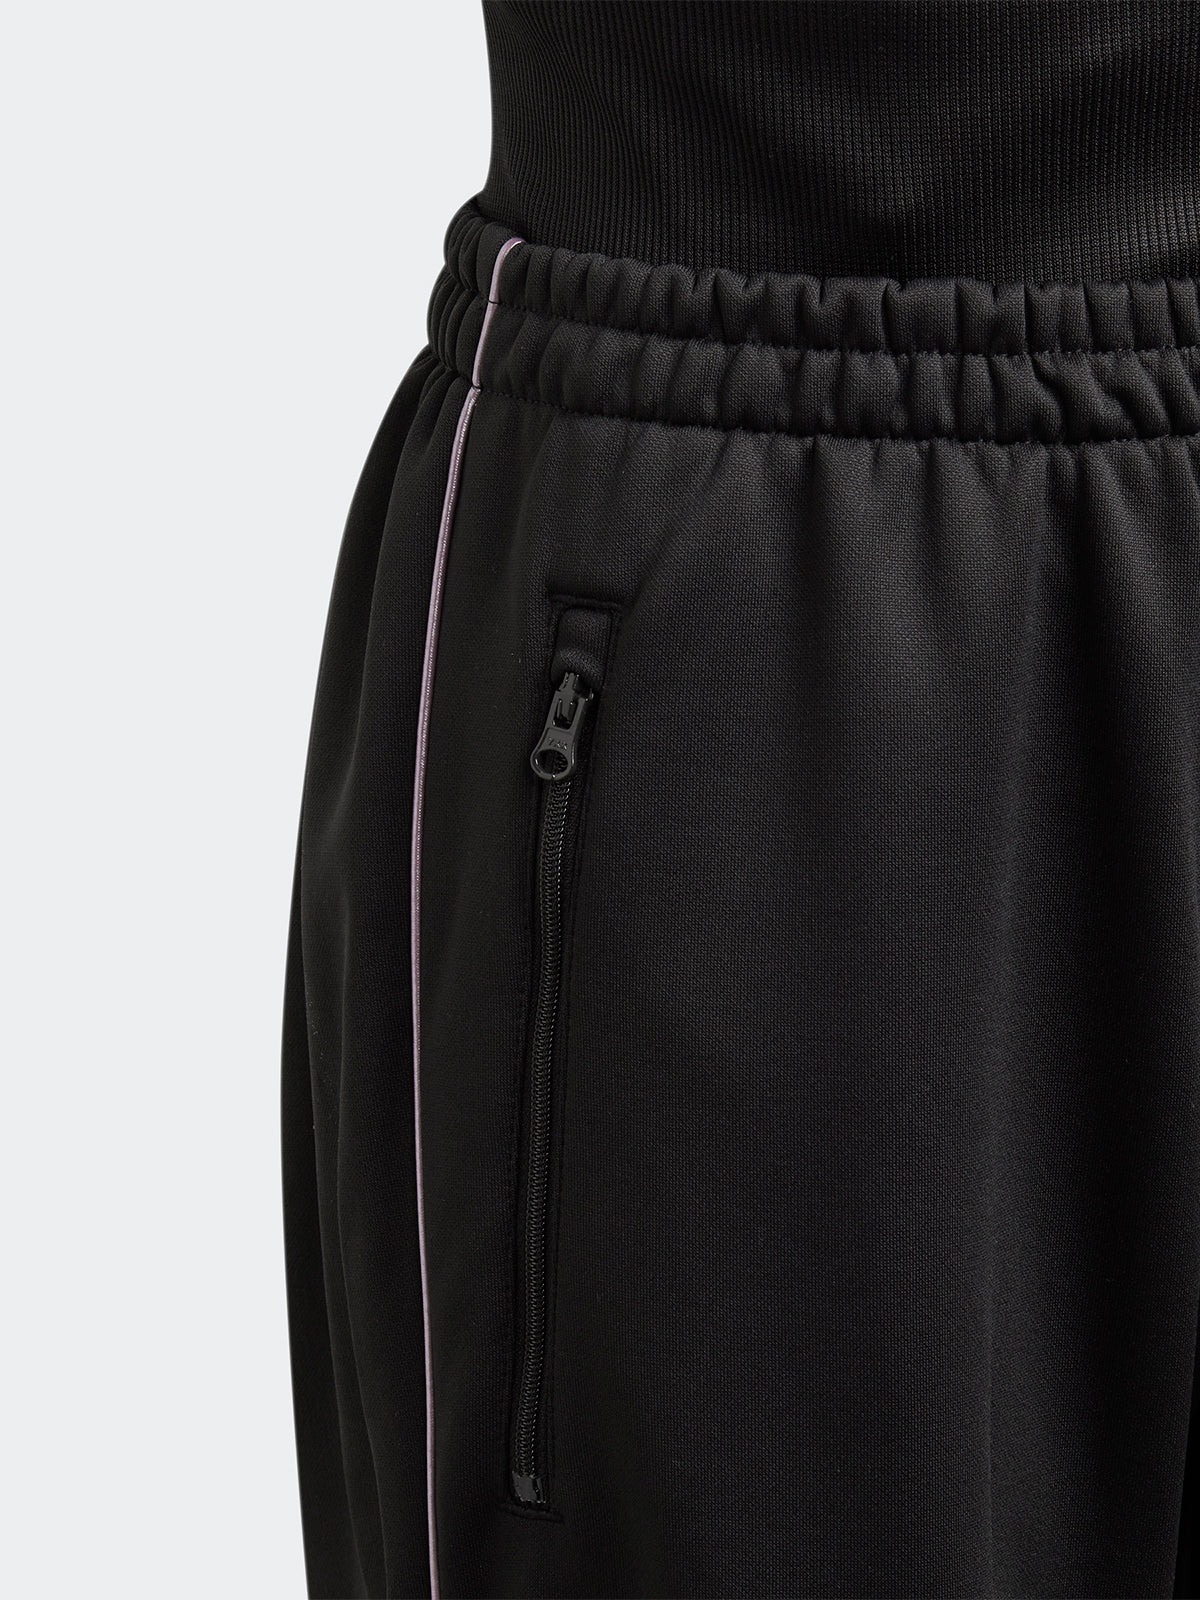 מכנסי טרנינג בגזרה גבוהה / ילדות- adidas performance|אדידס פרפורמנס